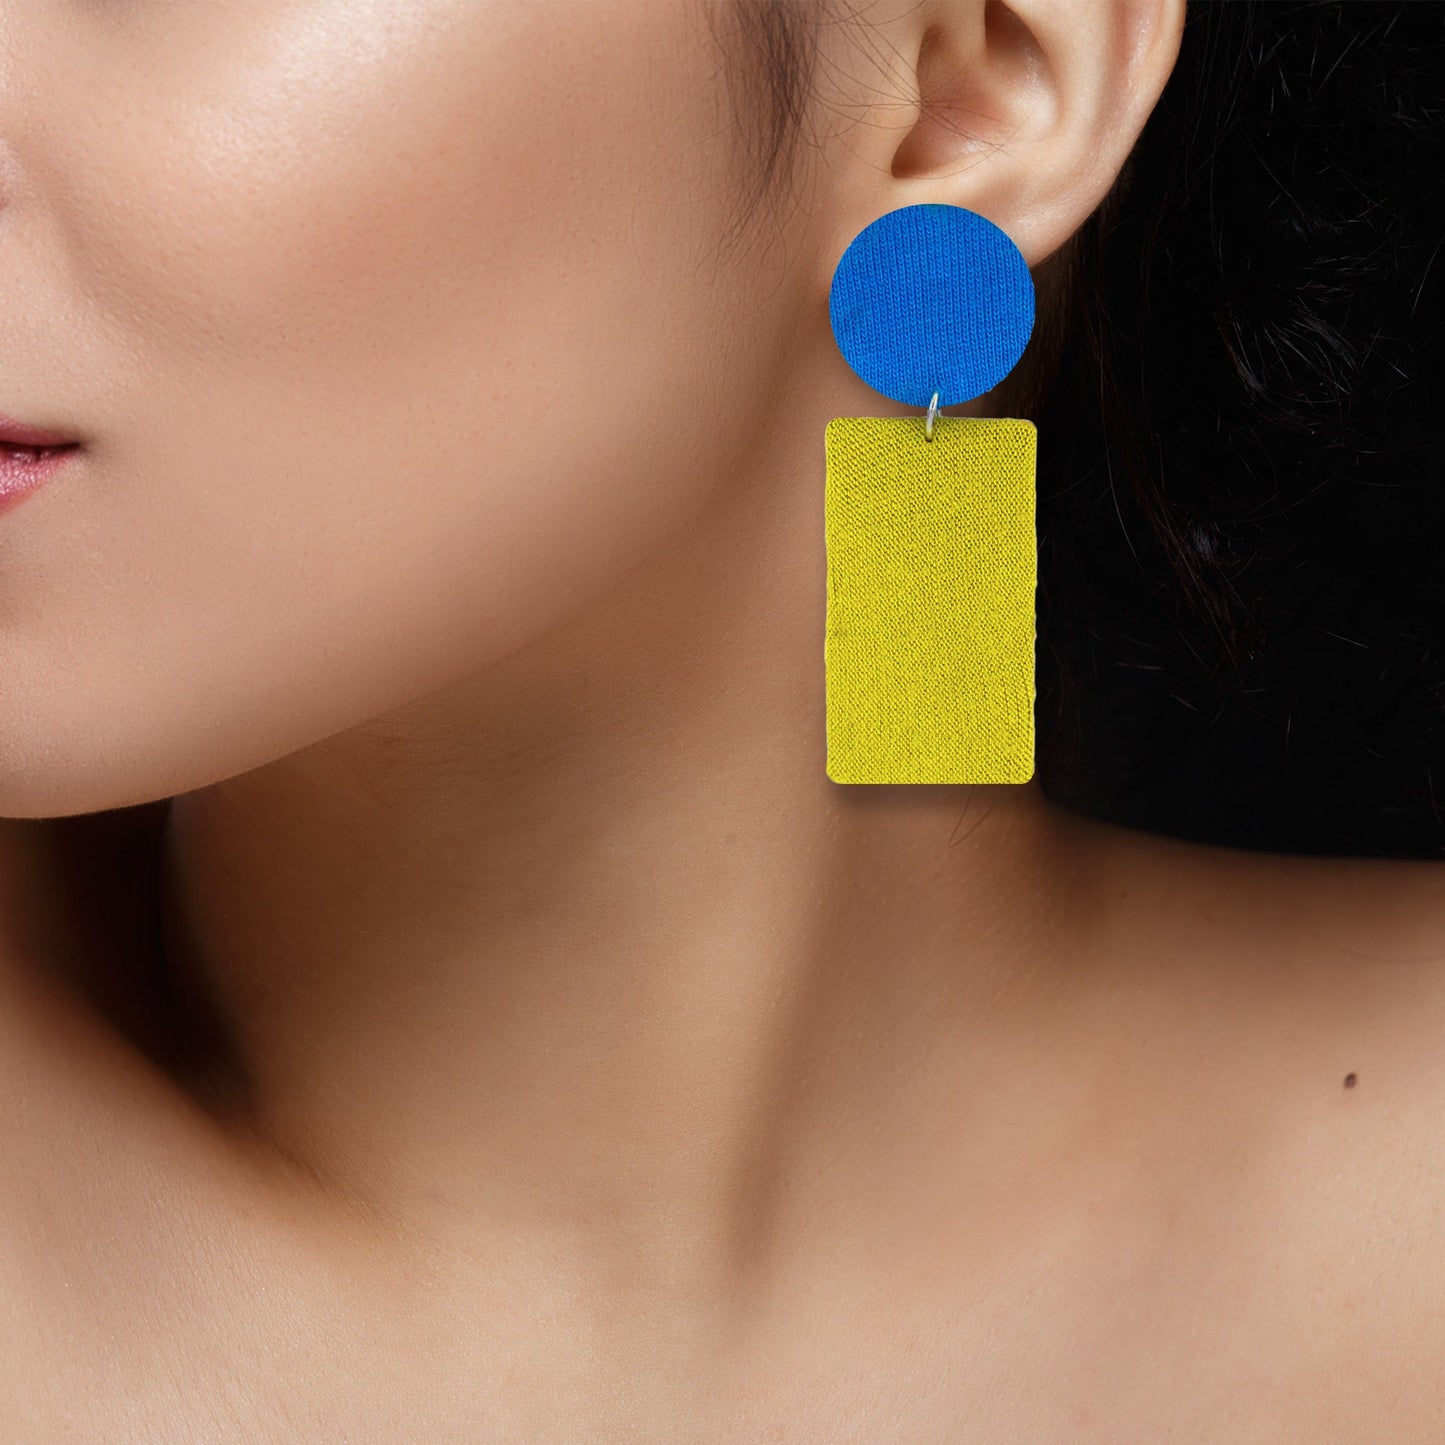 Organic Vibes Handmade Geometrical Shape Blue-Olive Dangler Fabric Earrings For Women